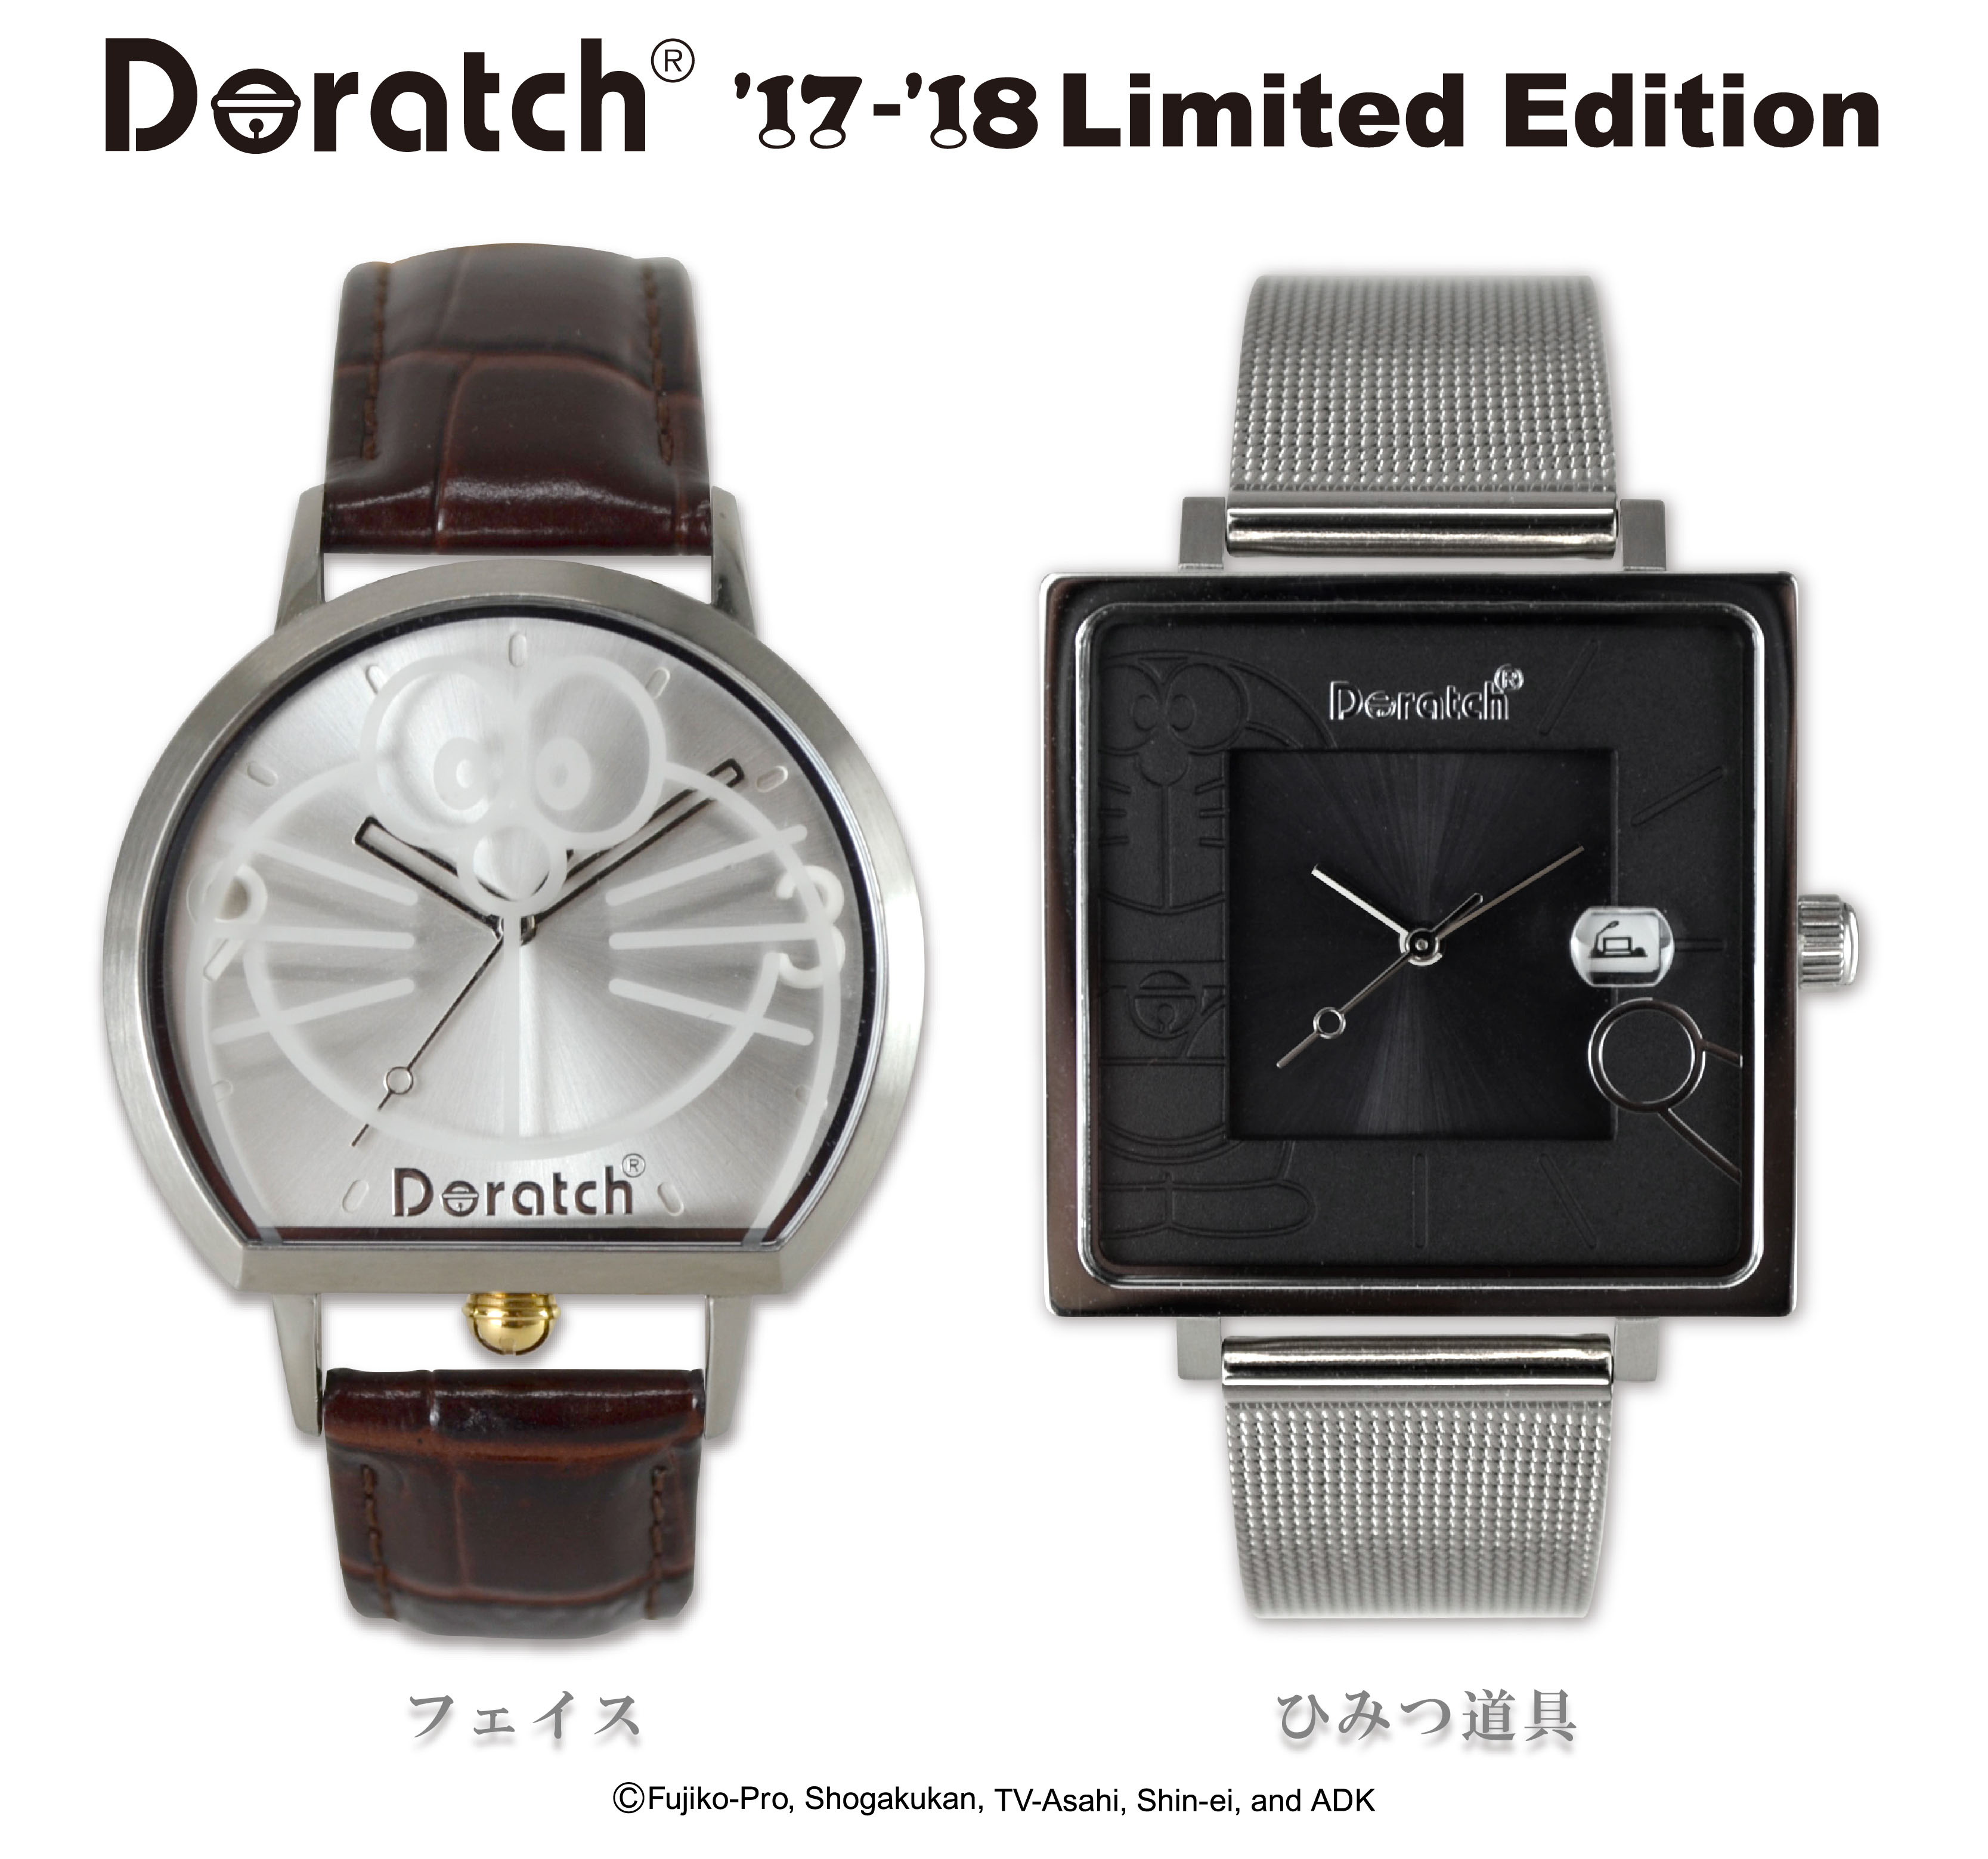 今日はドラえもんの誕生日 シックでオトナなデザインの腕時計 ドラッチ 発売 Dime アットダイム